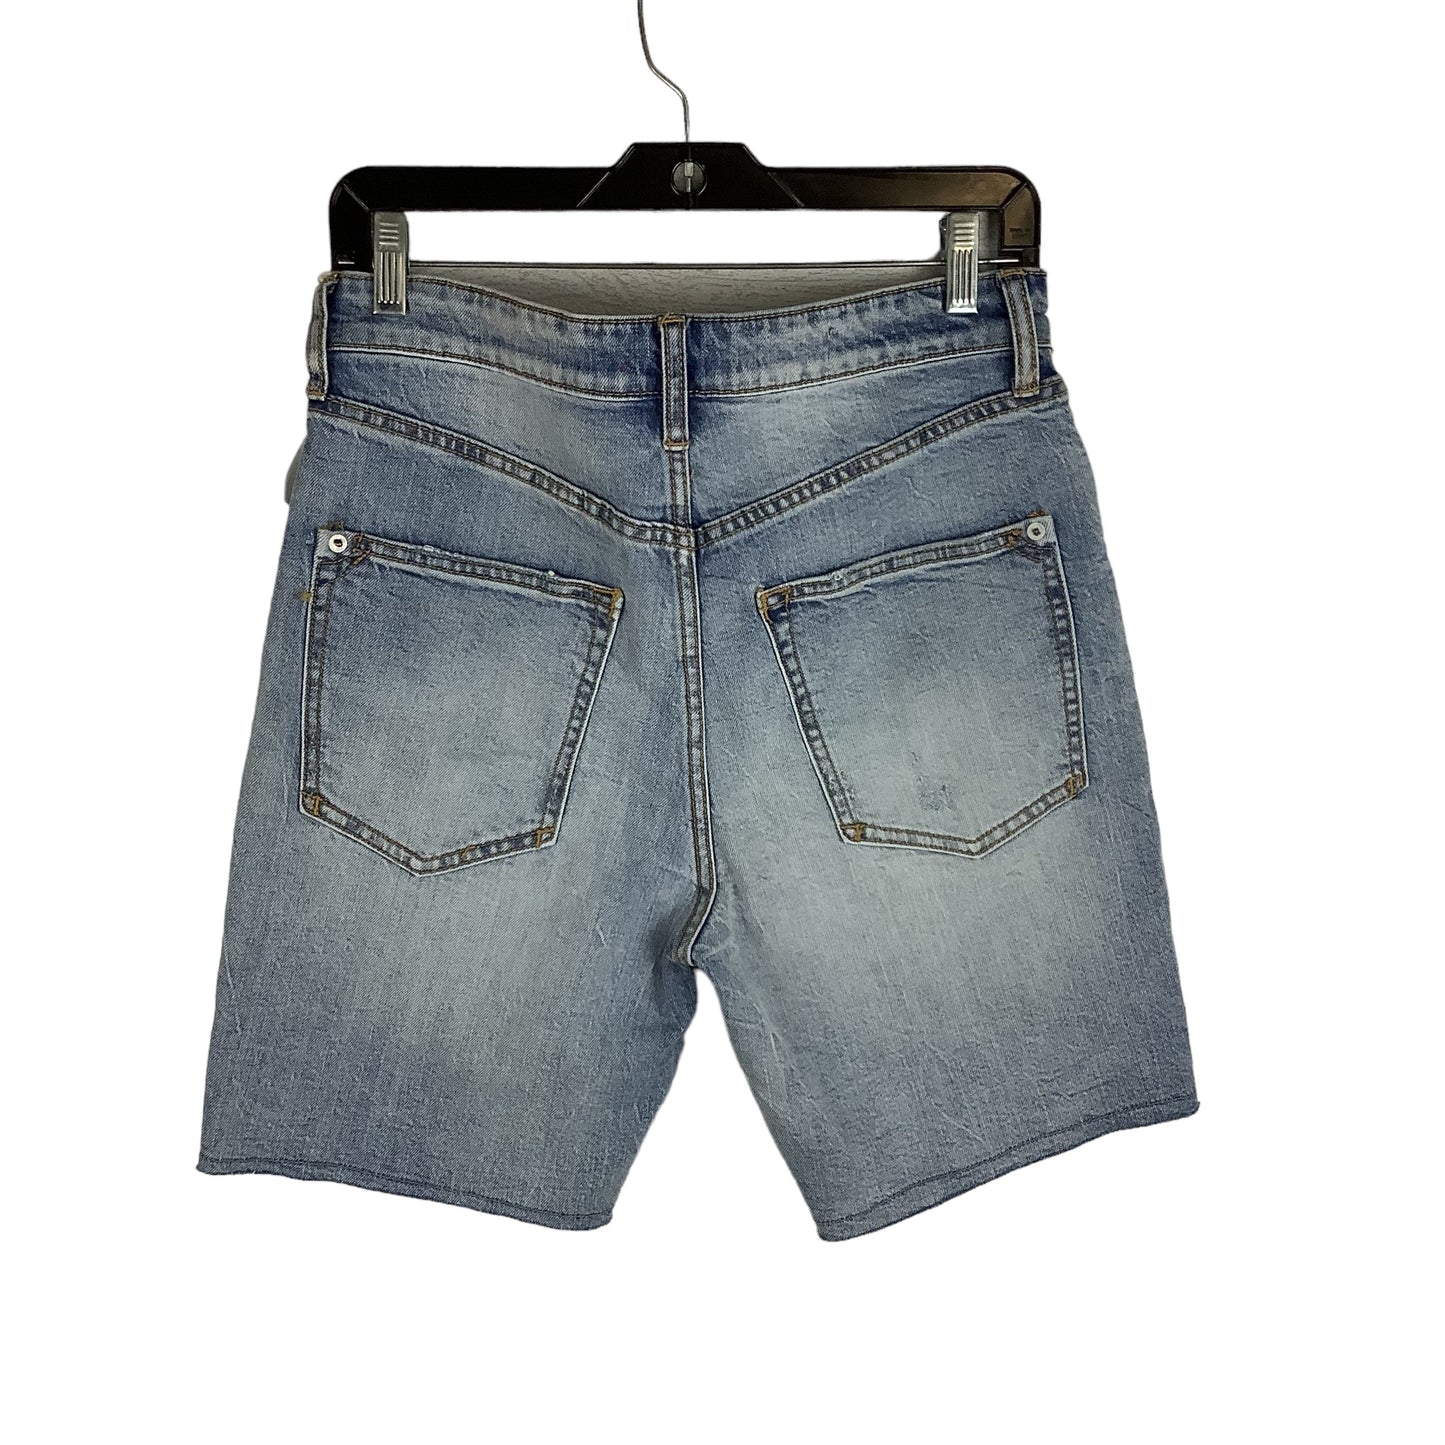 Blue Denim Shorts Pilcro, Size 27 petite